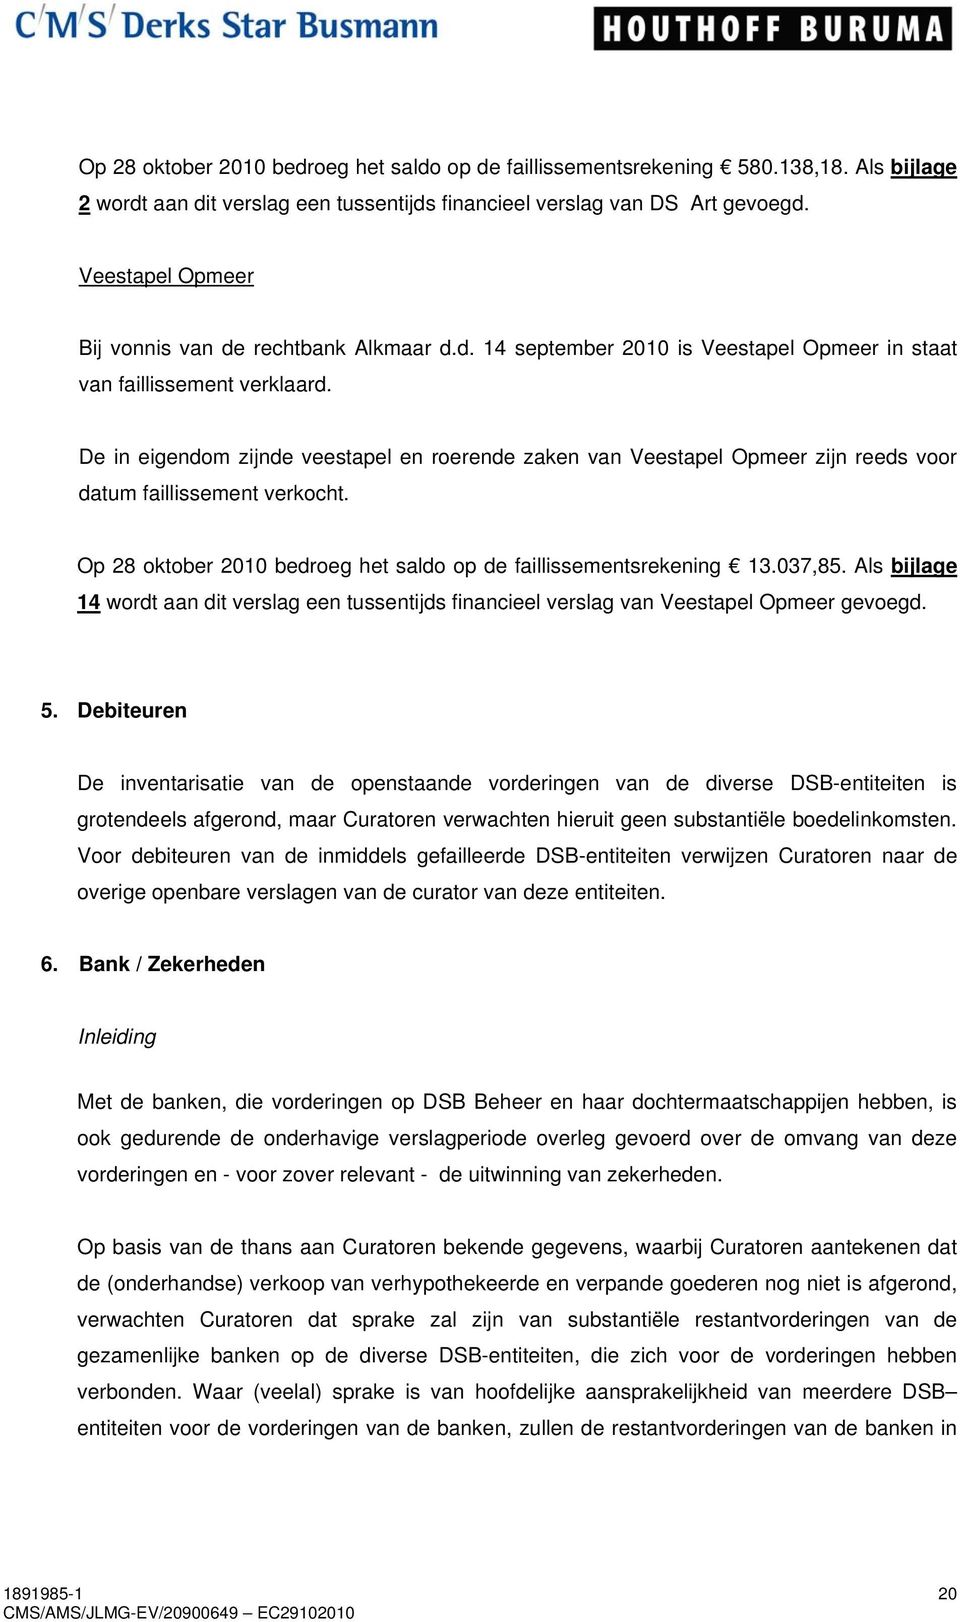 De in eigendom zijnde veestapel en roerende zaken van Veestapel Opmeer zijn reeds voor datum faillissement verkocht. Op 28 oktober 2010 bedroeg het saldo op de faillissementsrekening 13.037,85.